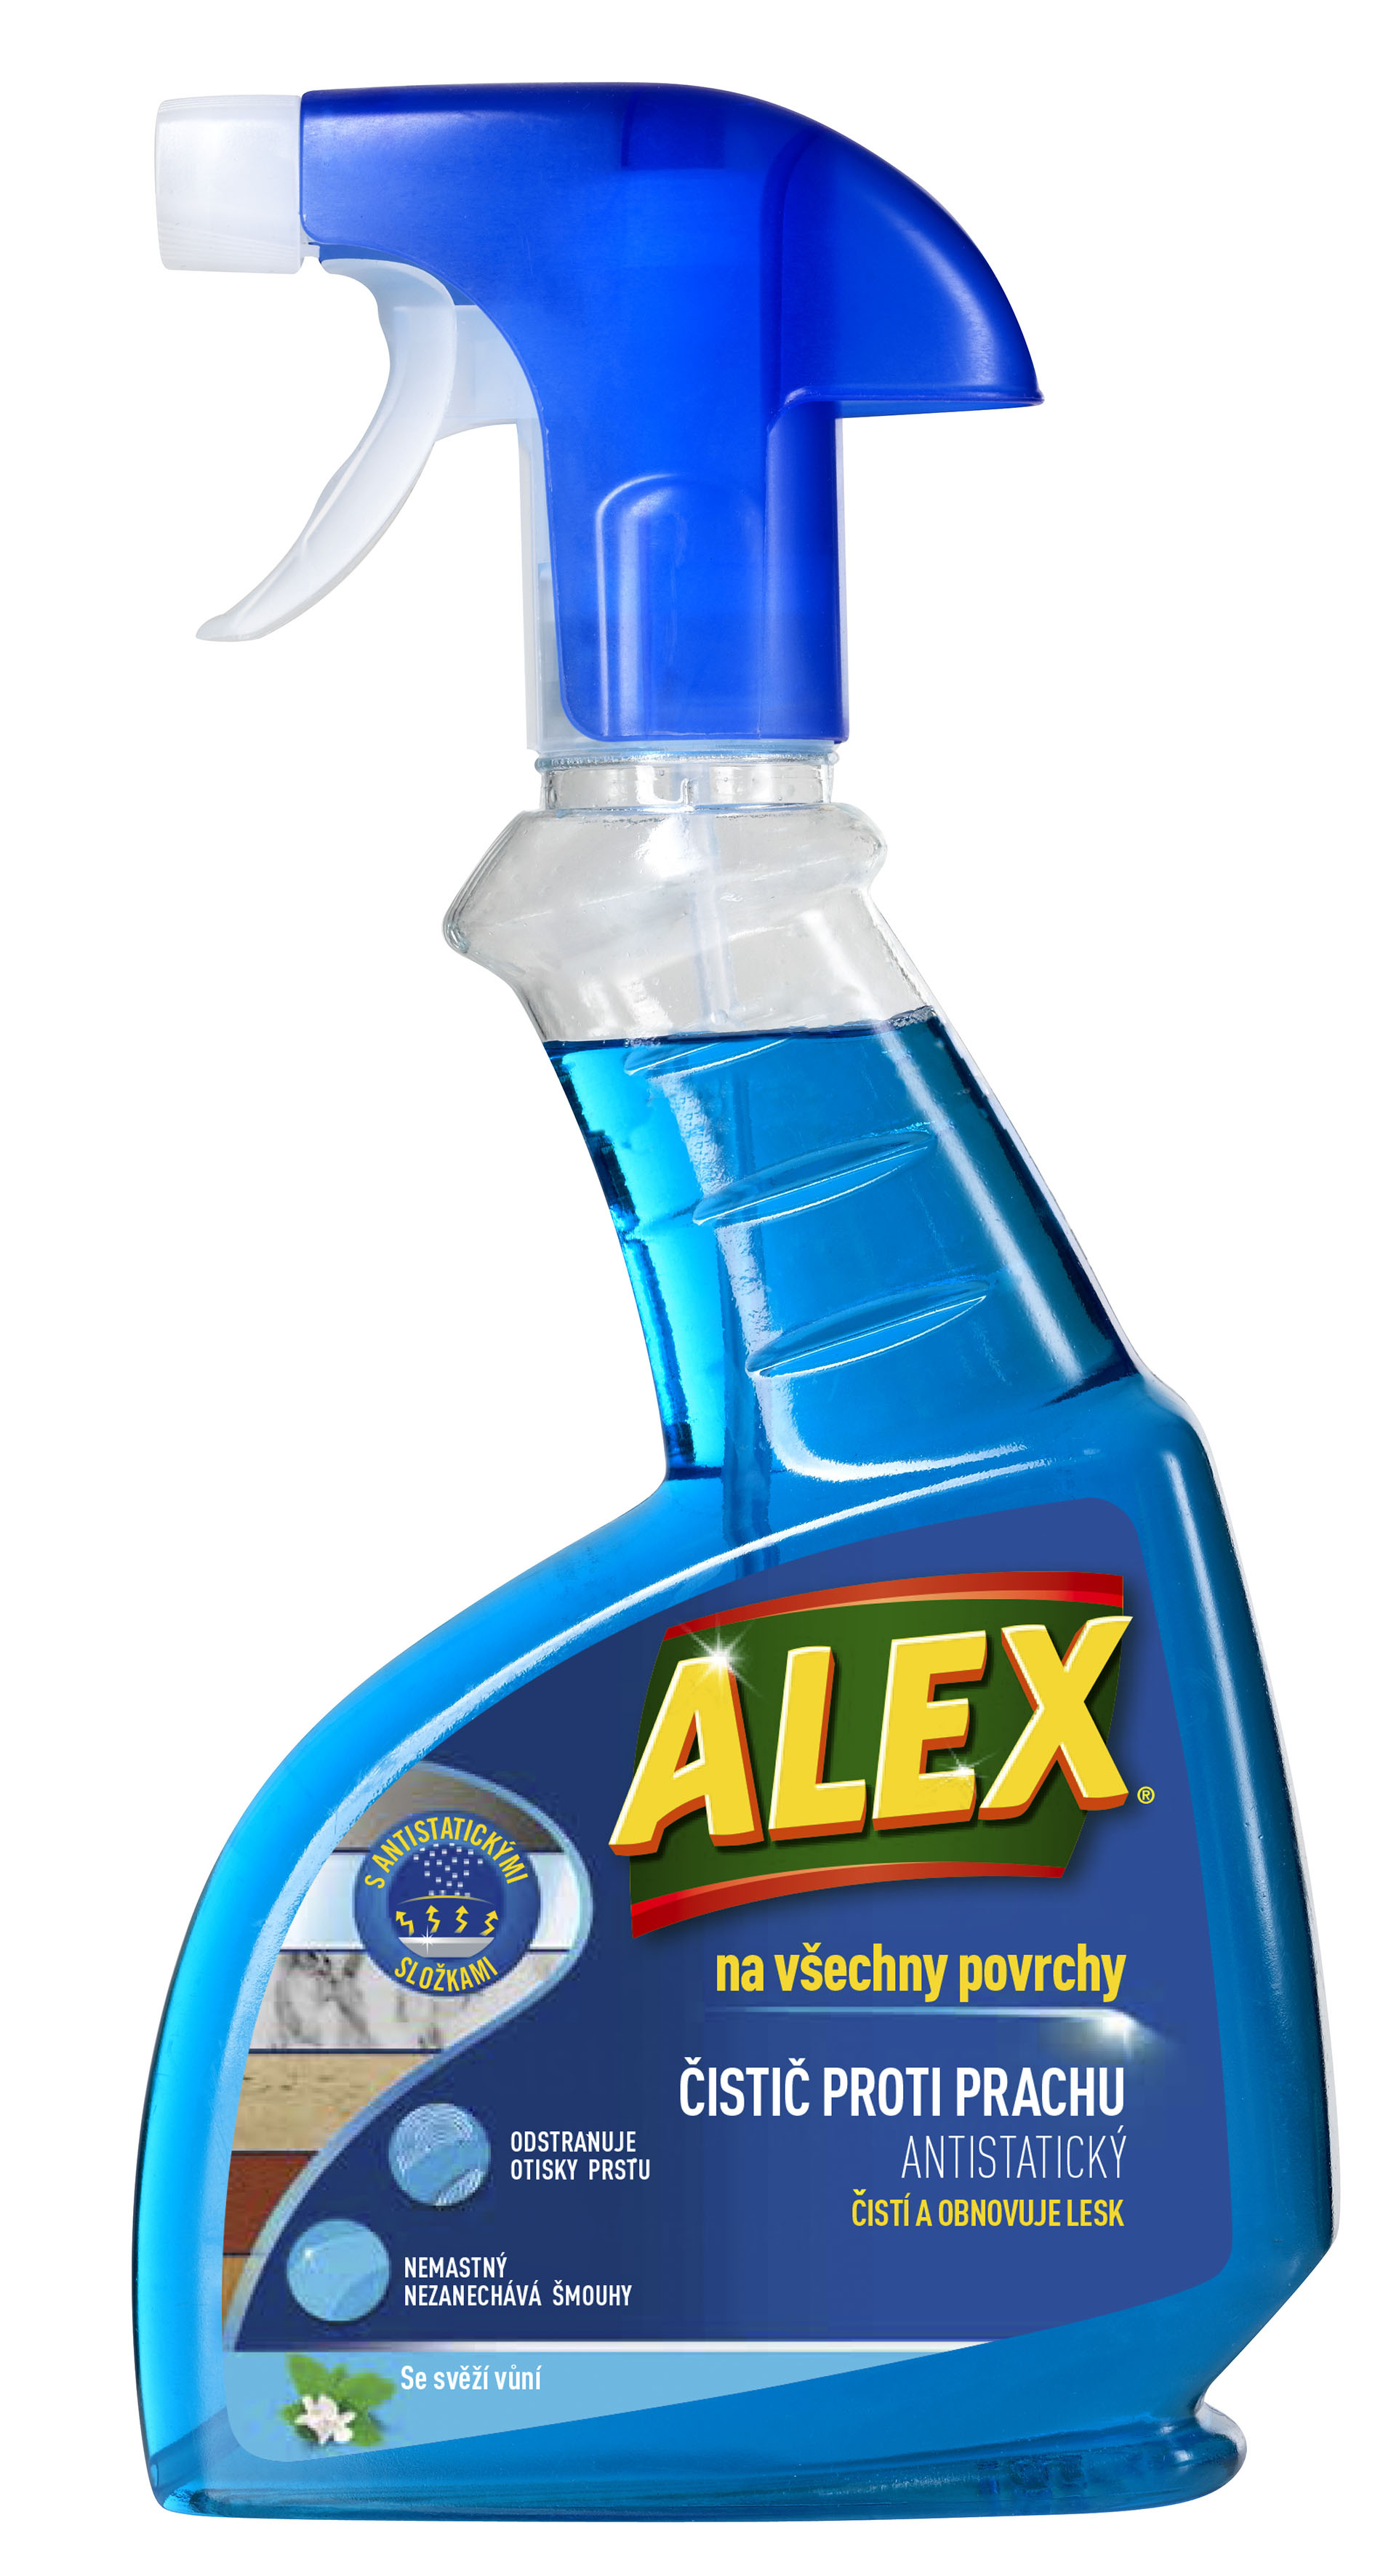 ALEX proti prachu na všechny povrchy, MR - sprej, 375 ml modrý